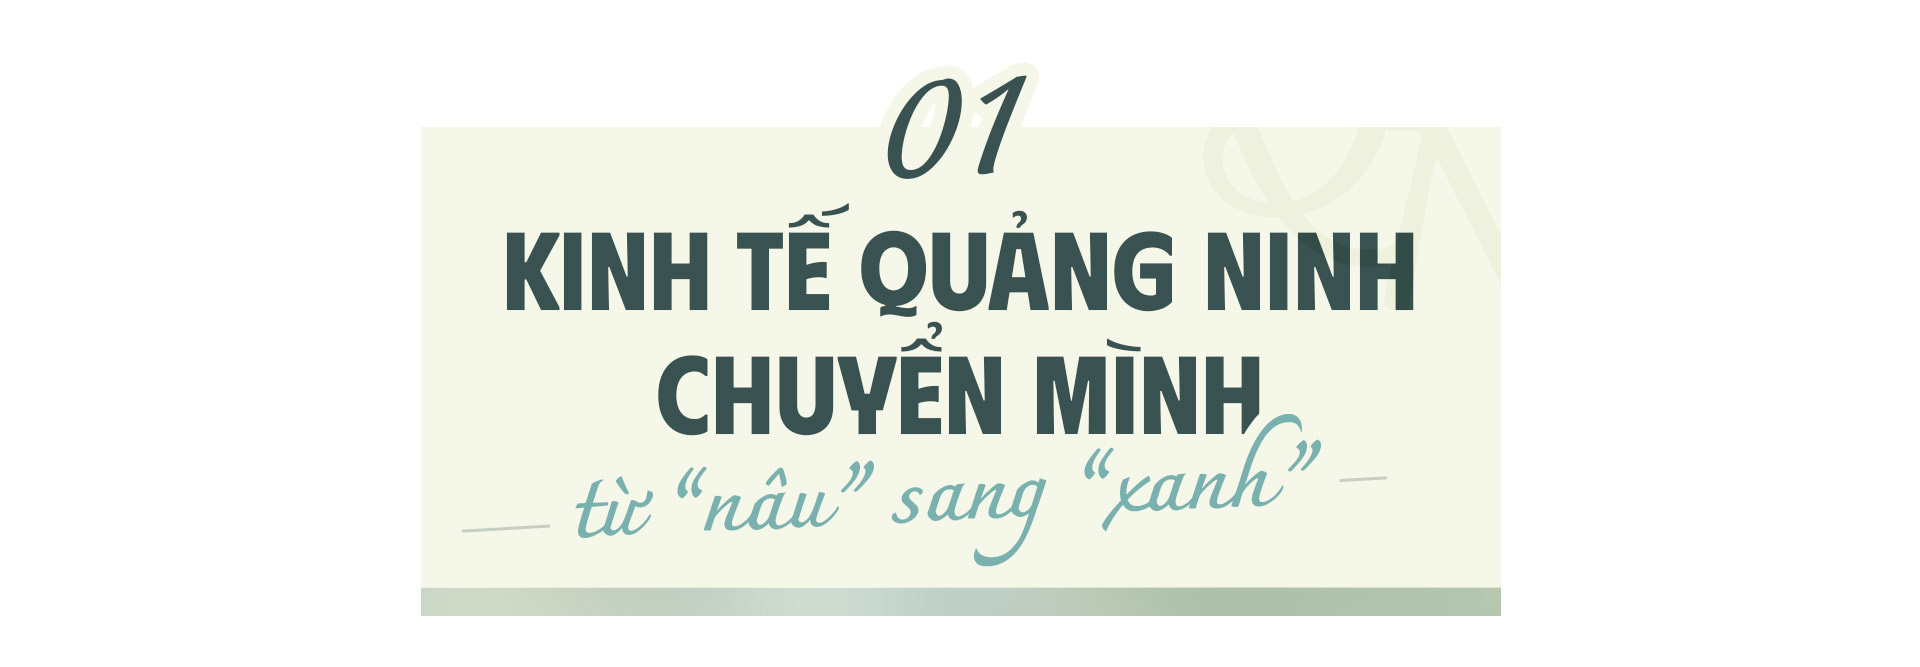 Quảng Ninh - Vì một khát vọng thịnh vượng - Ảnh 1.